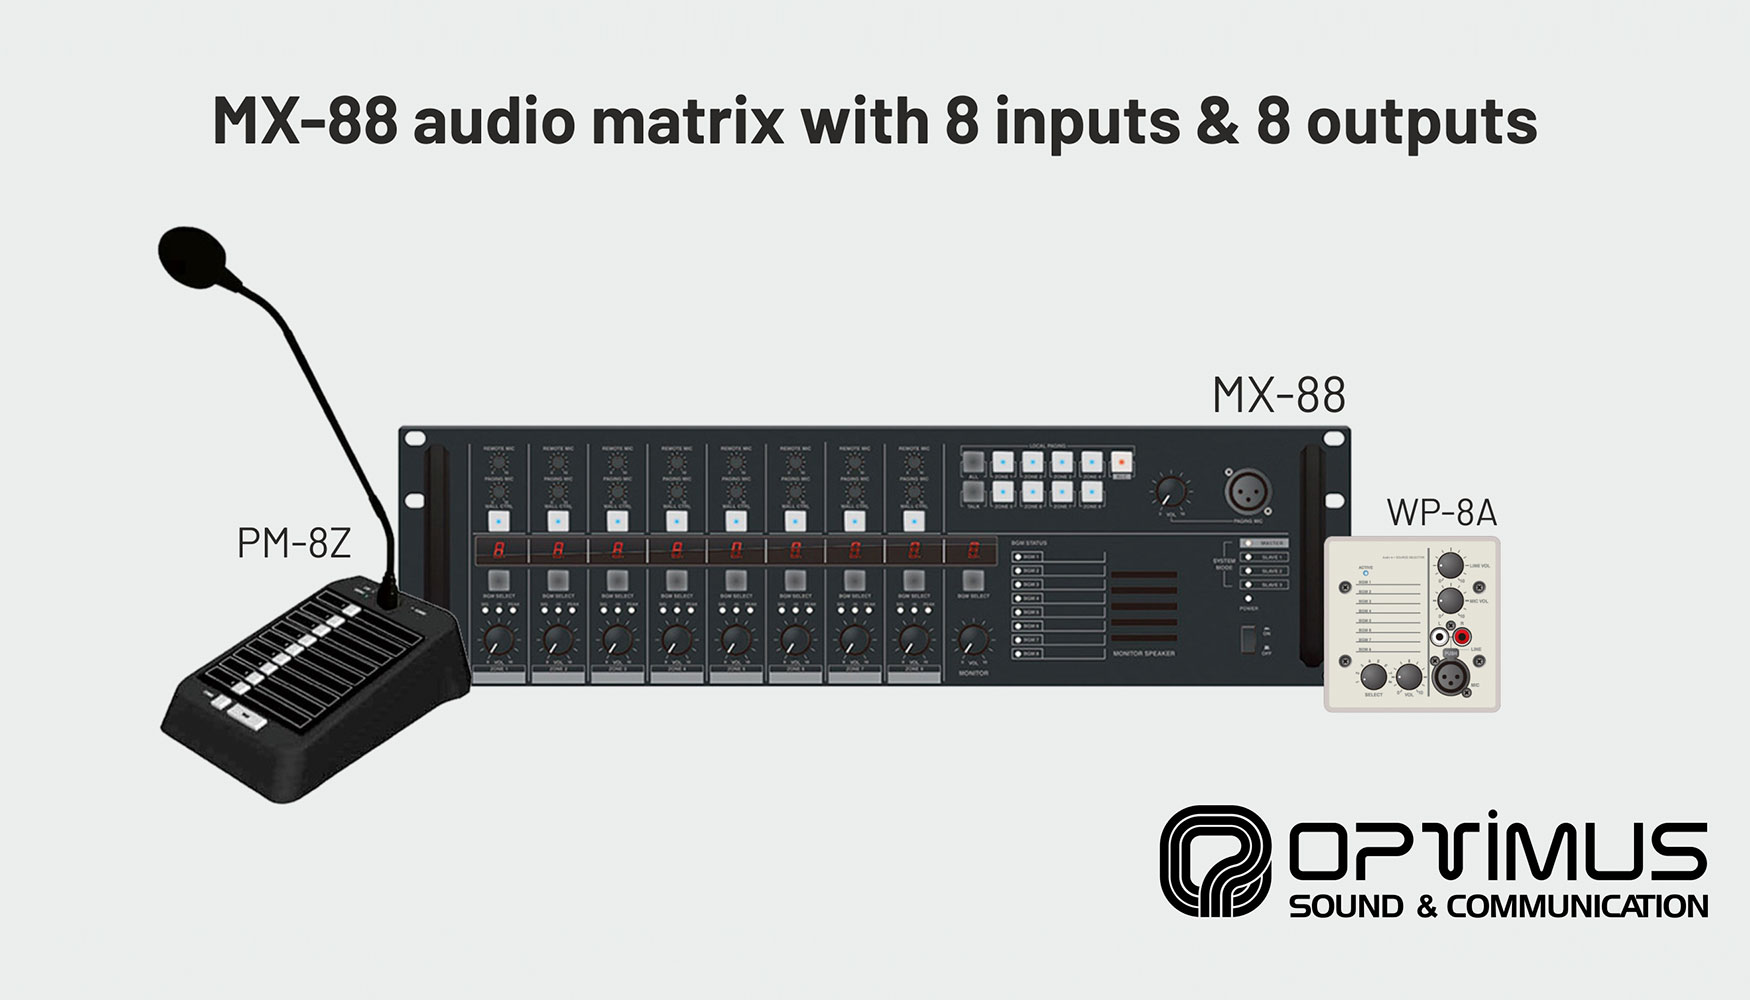 Matriz de audio MX-88 con 8 entradas y 8 salidas de Optimus